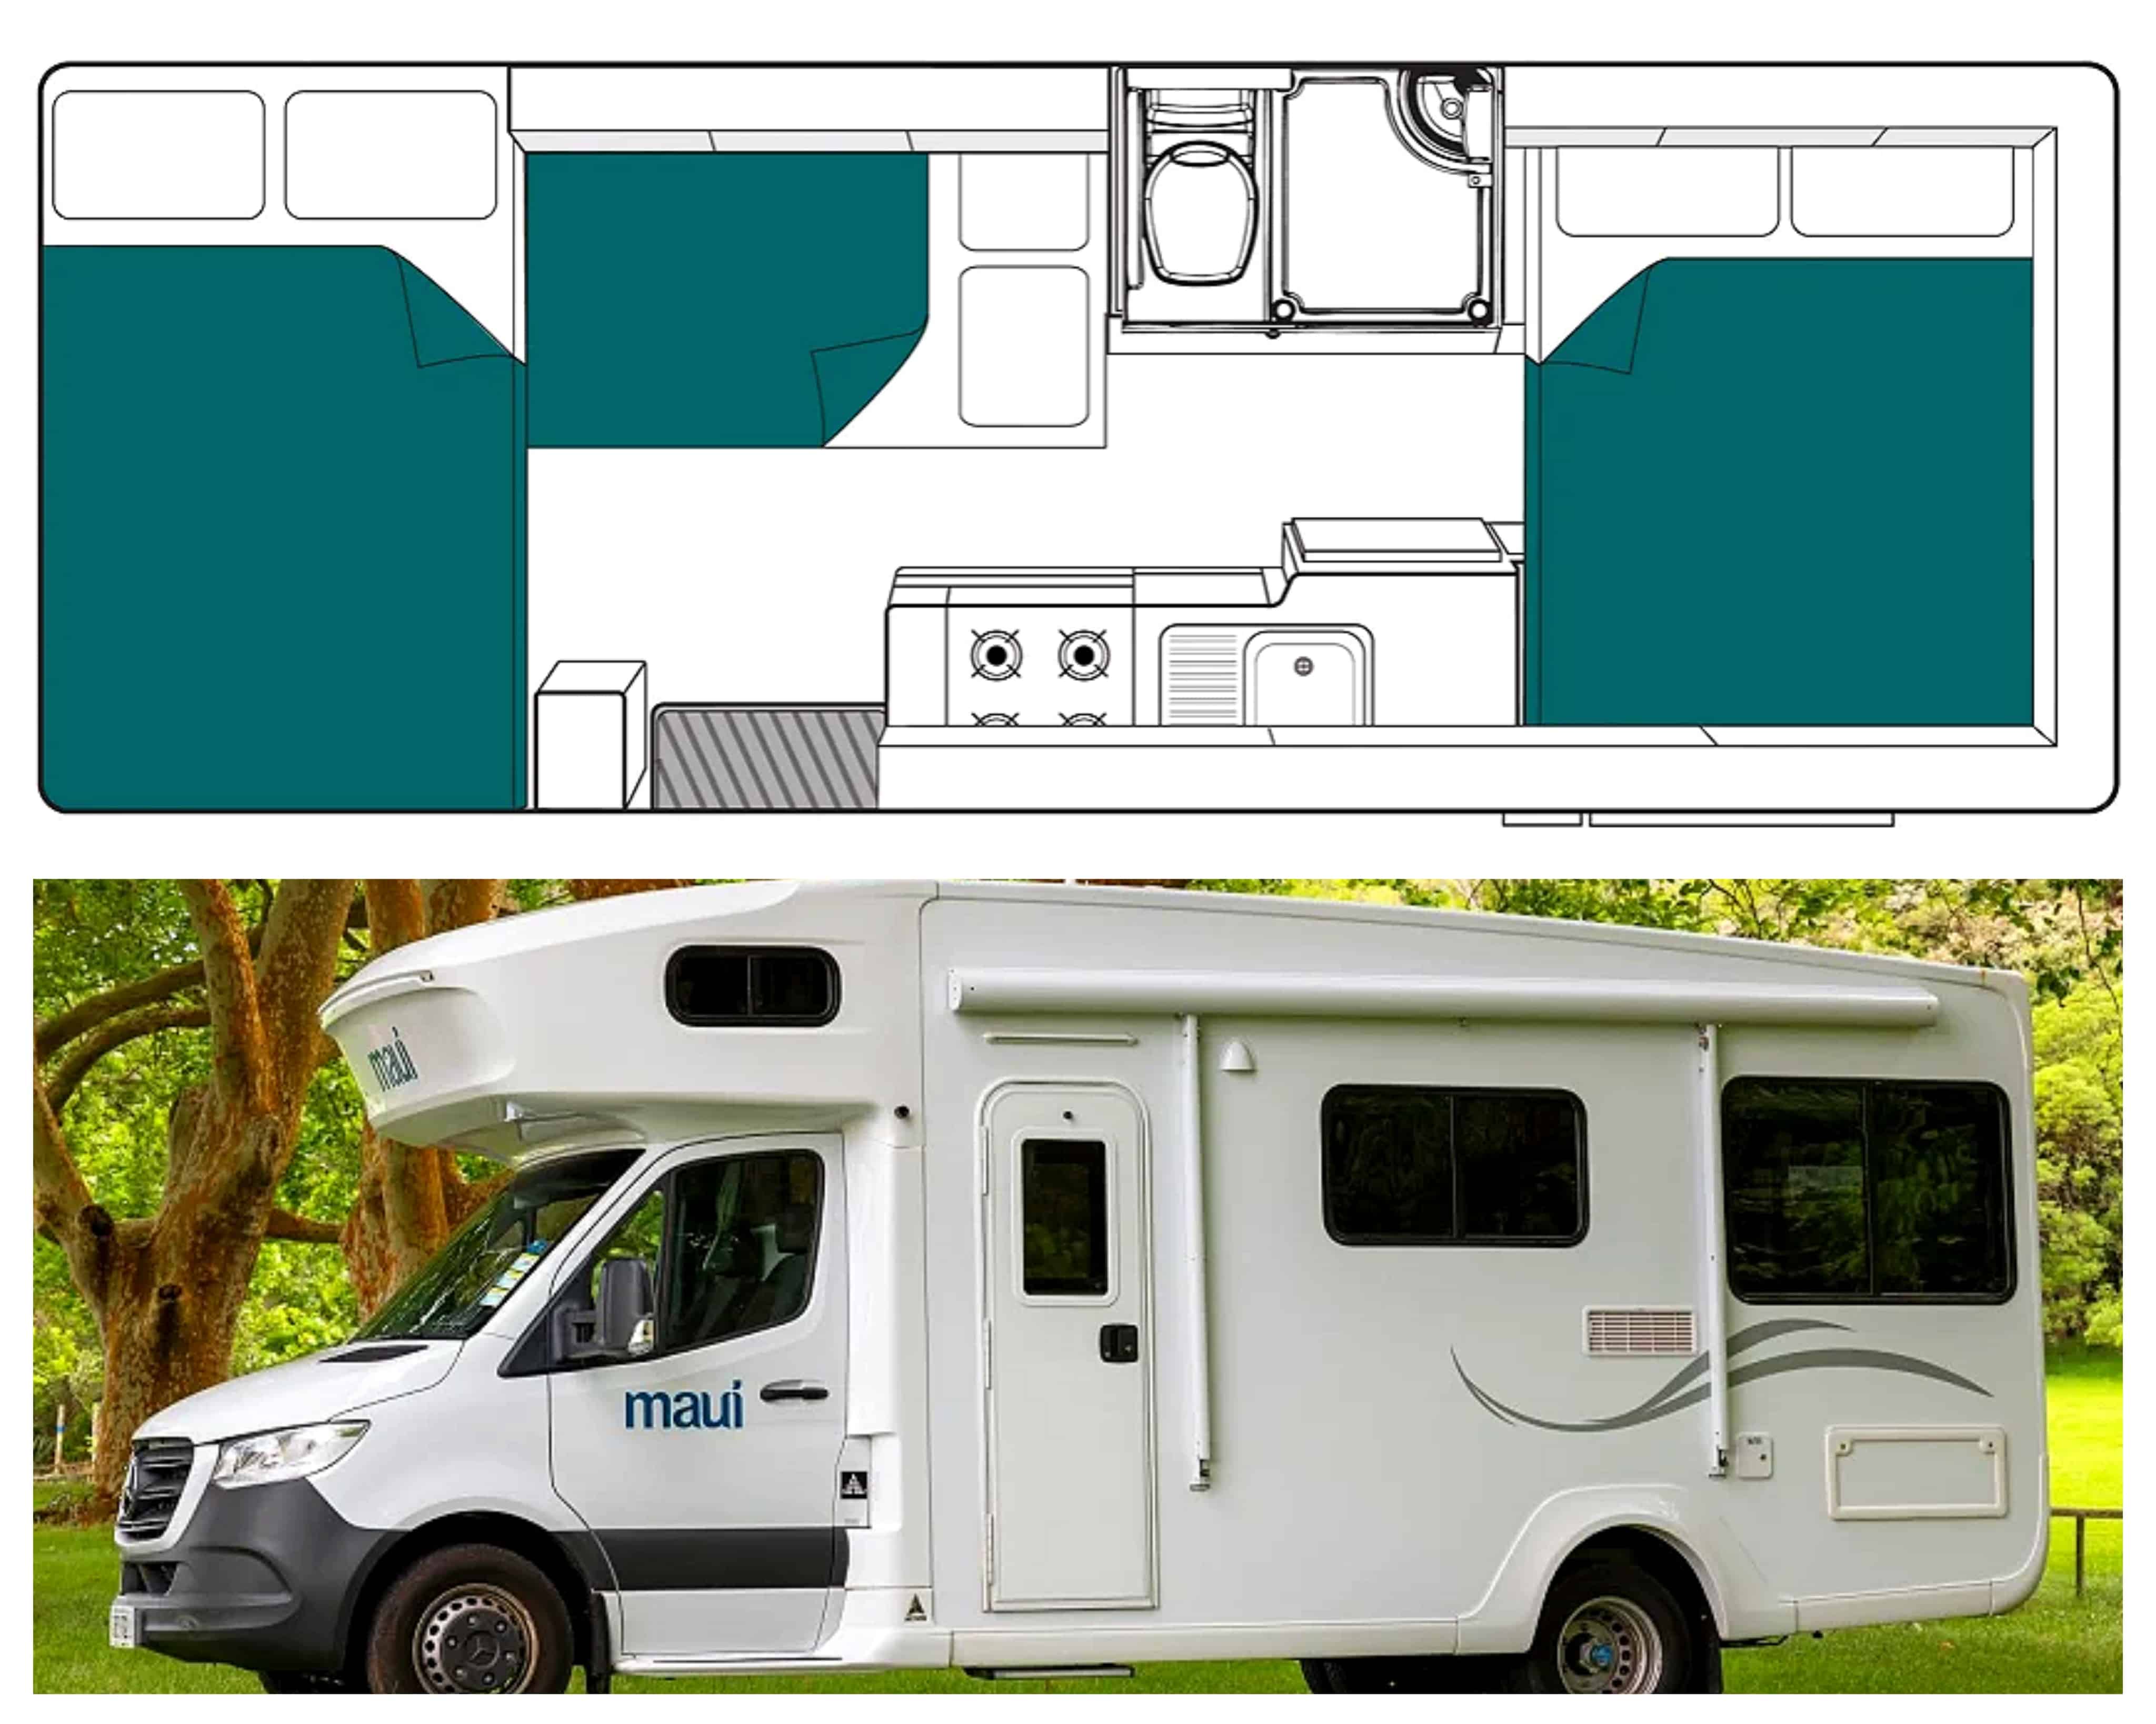 Plan et photo extérieur camping-car modèle 6 Berth River en Australie